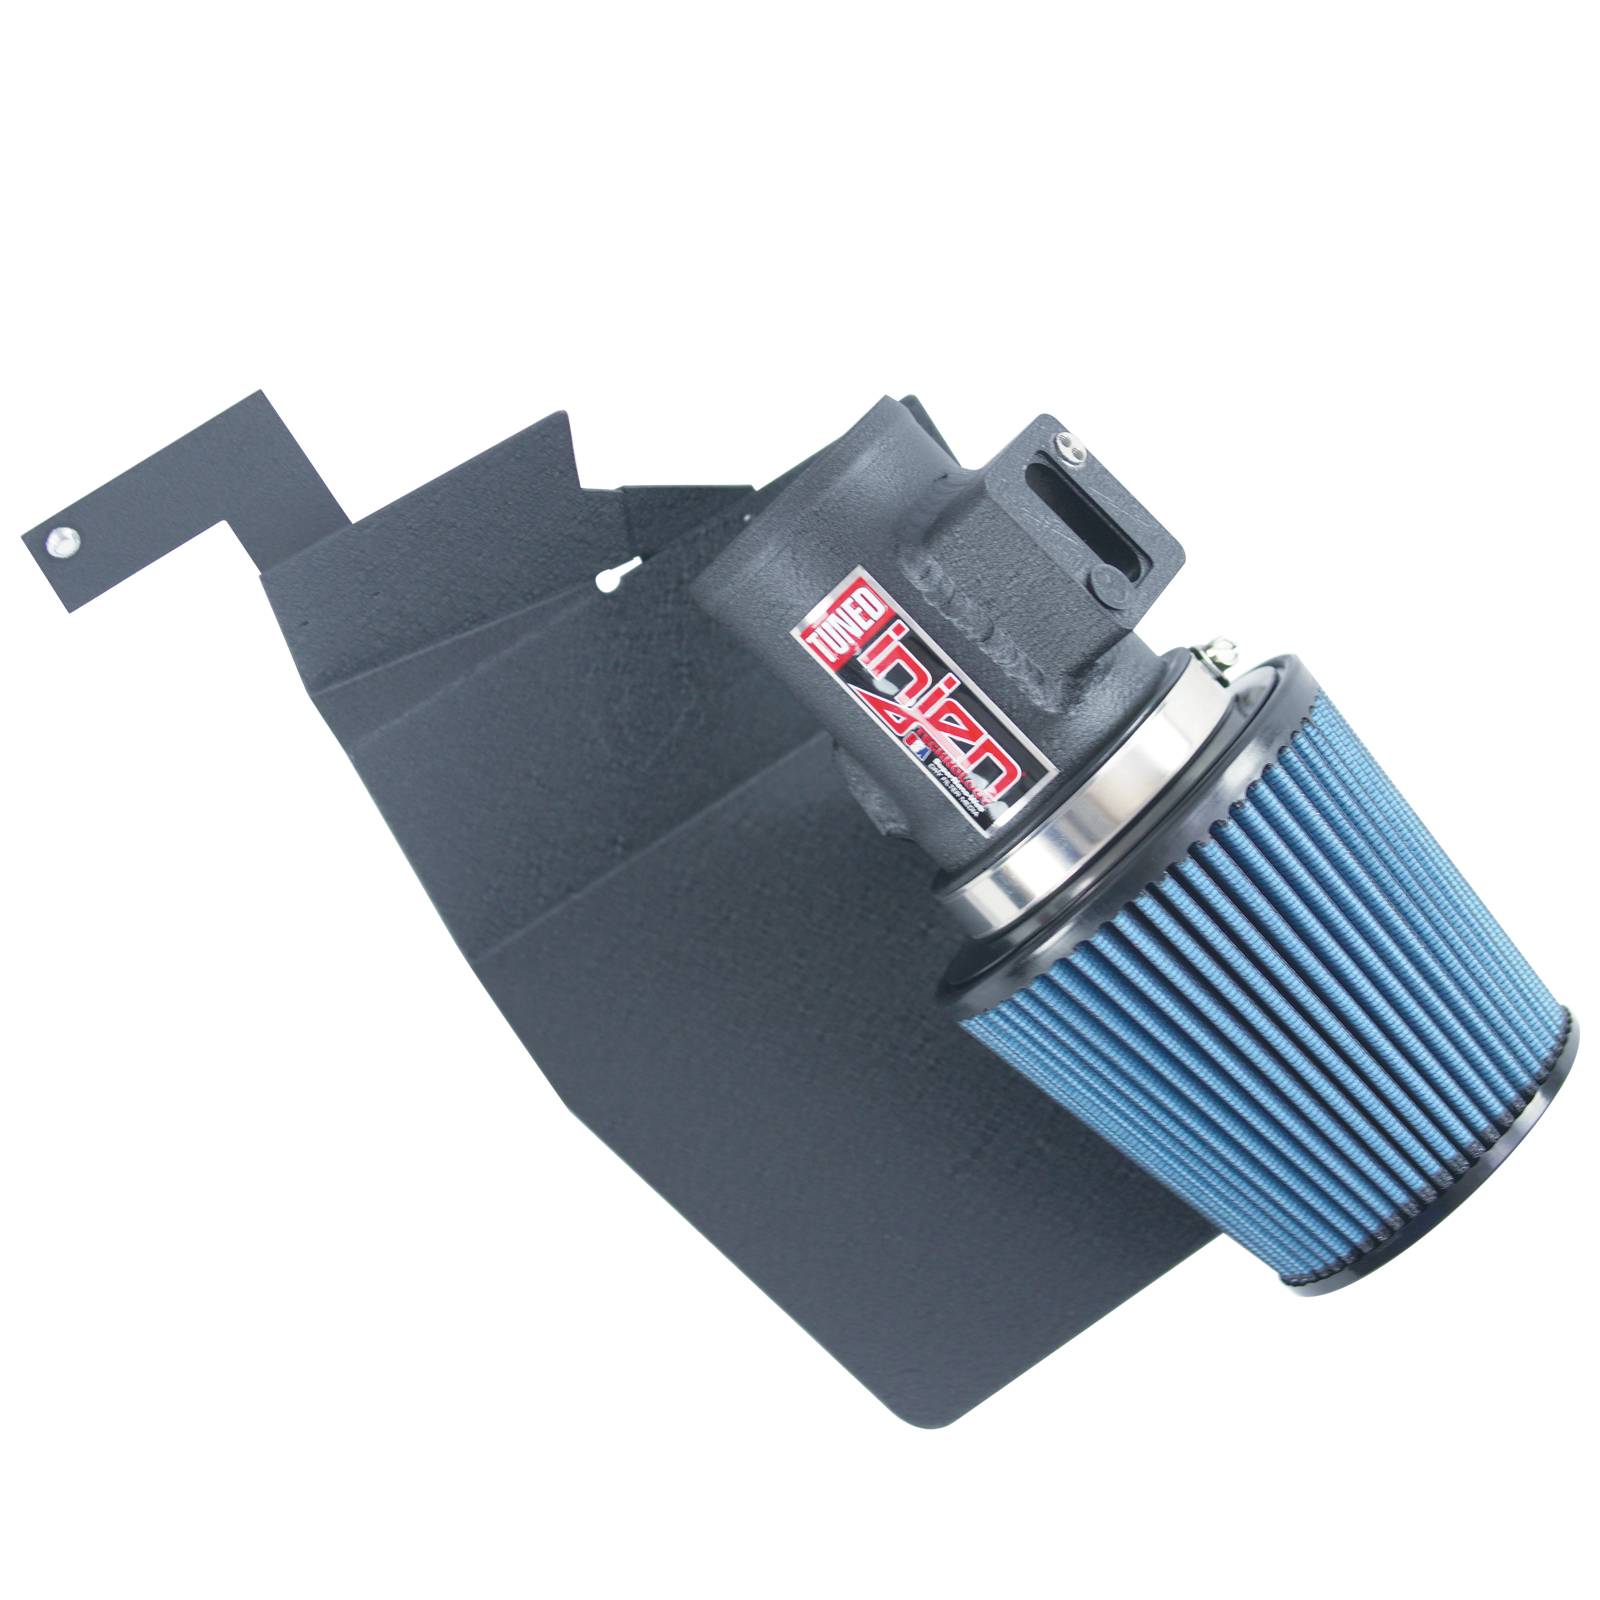 Injen Sp Short Ram Cold Air Intake System - Wrinkle Black (+8 Hp & +7 Lb-Ft)